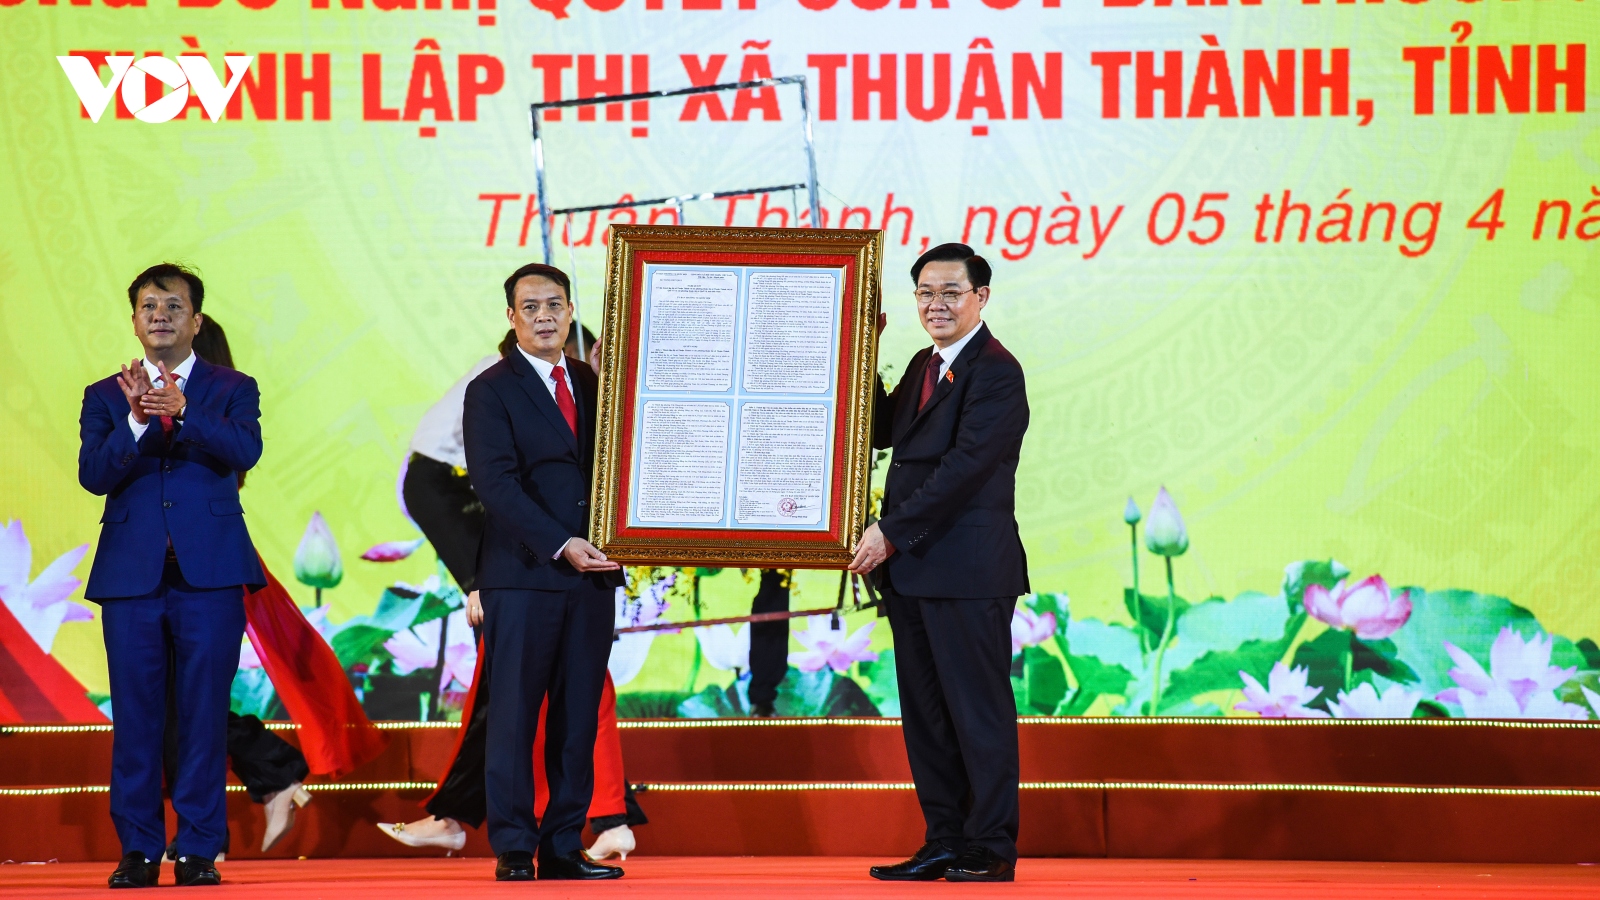 Toàn cảnh Lễ công bố thành lập thị xã Thuận Thành của tỉnh Bắc Ninh